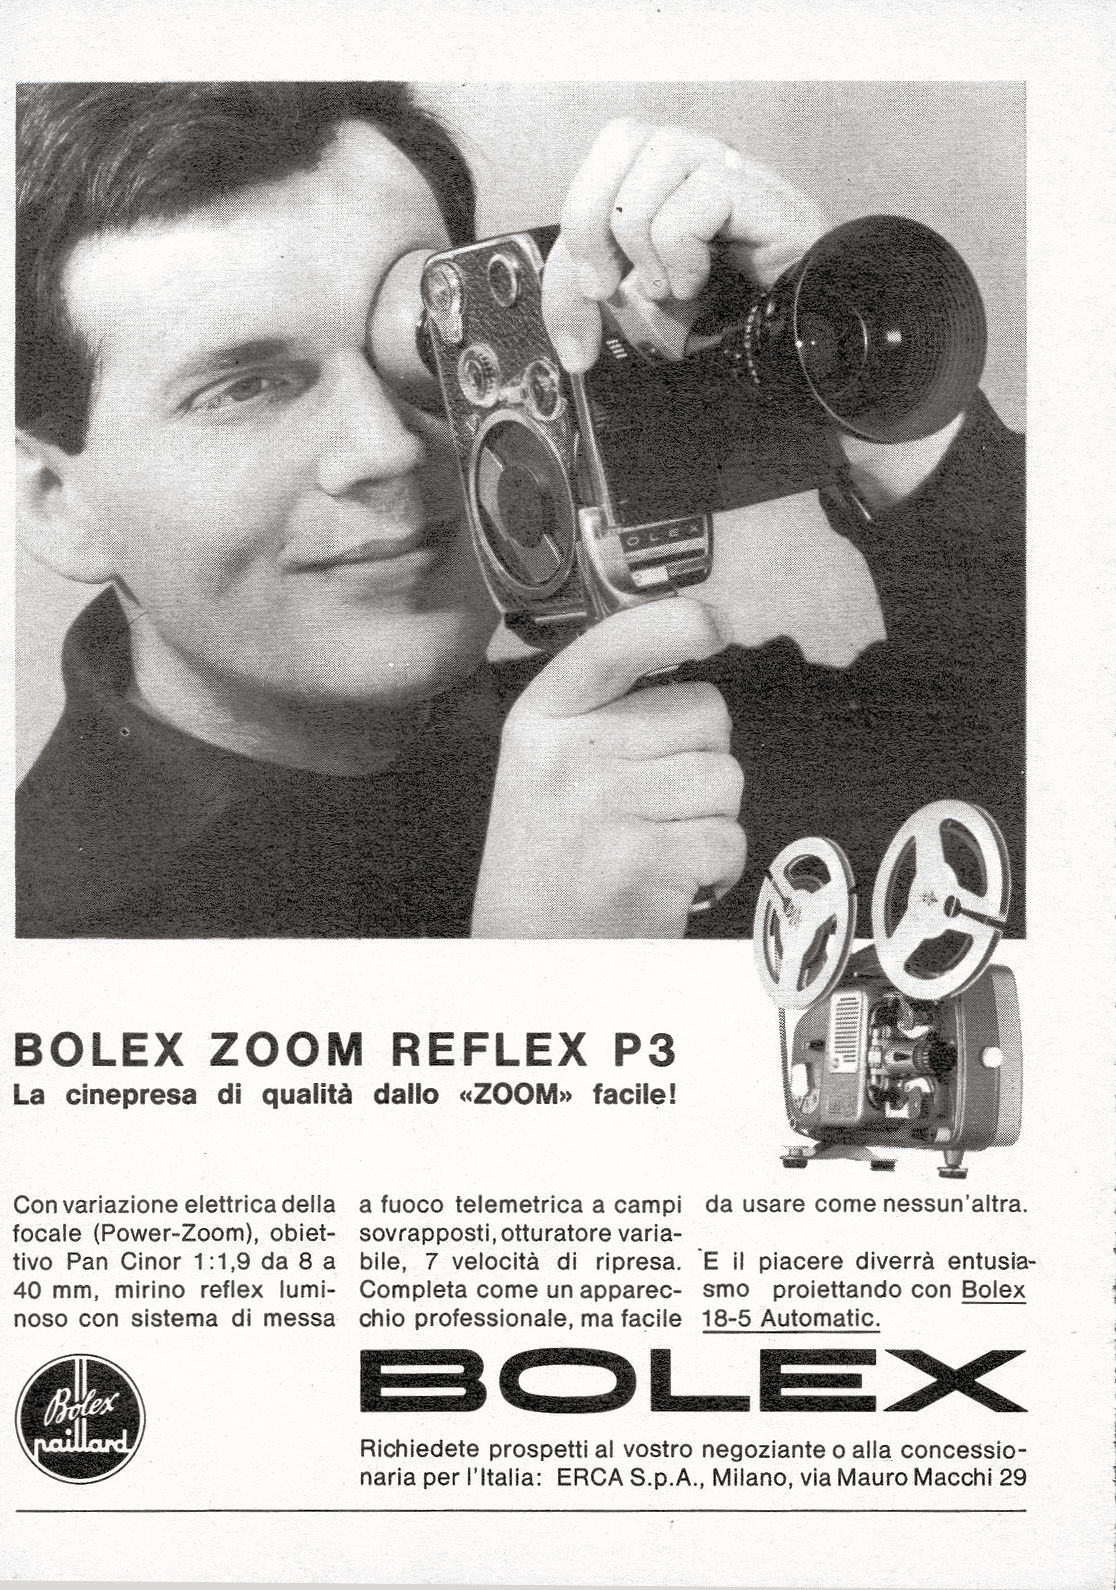 BOLEX P3 Zoom Reflex Publicité 1964